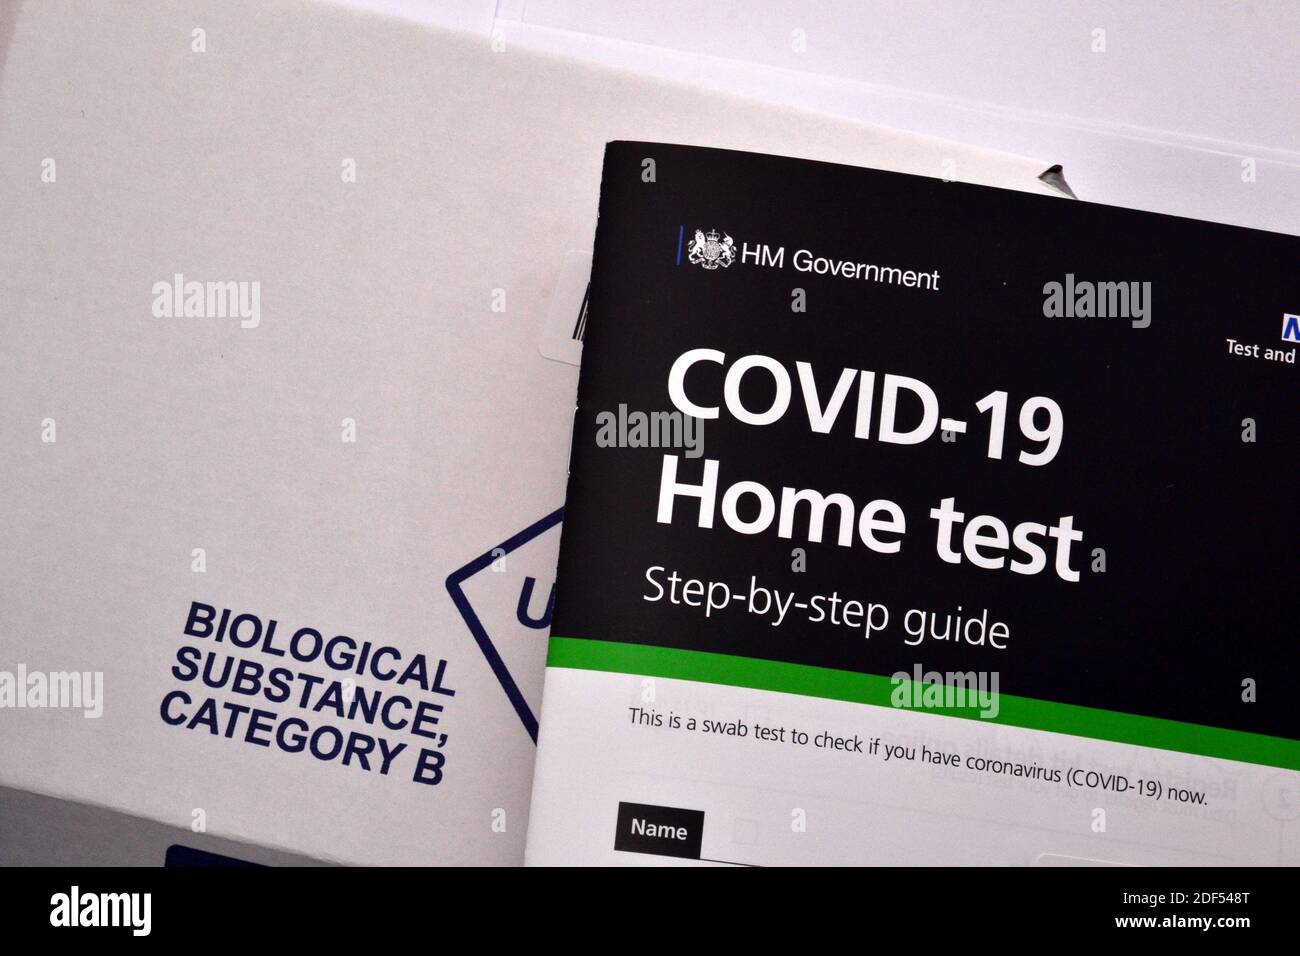 Eine britische H M Government und NHS Covid 19 Home Test Instruction Booklet auf dem Karton mit der Aufschrift "Biological Substance" für die Rückgabe der Testprobe. Stockfoto